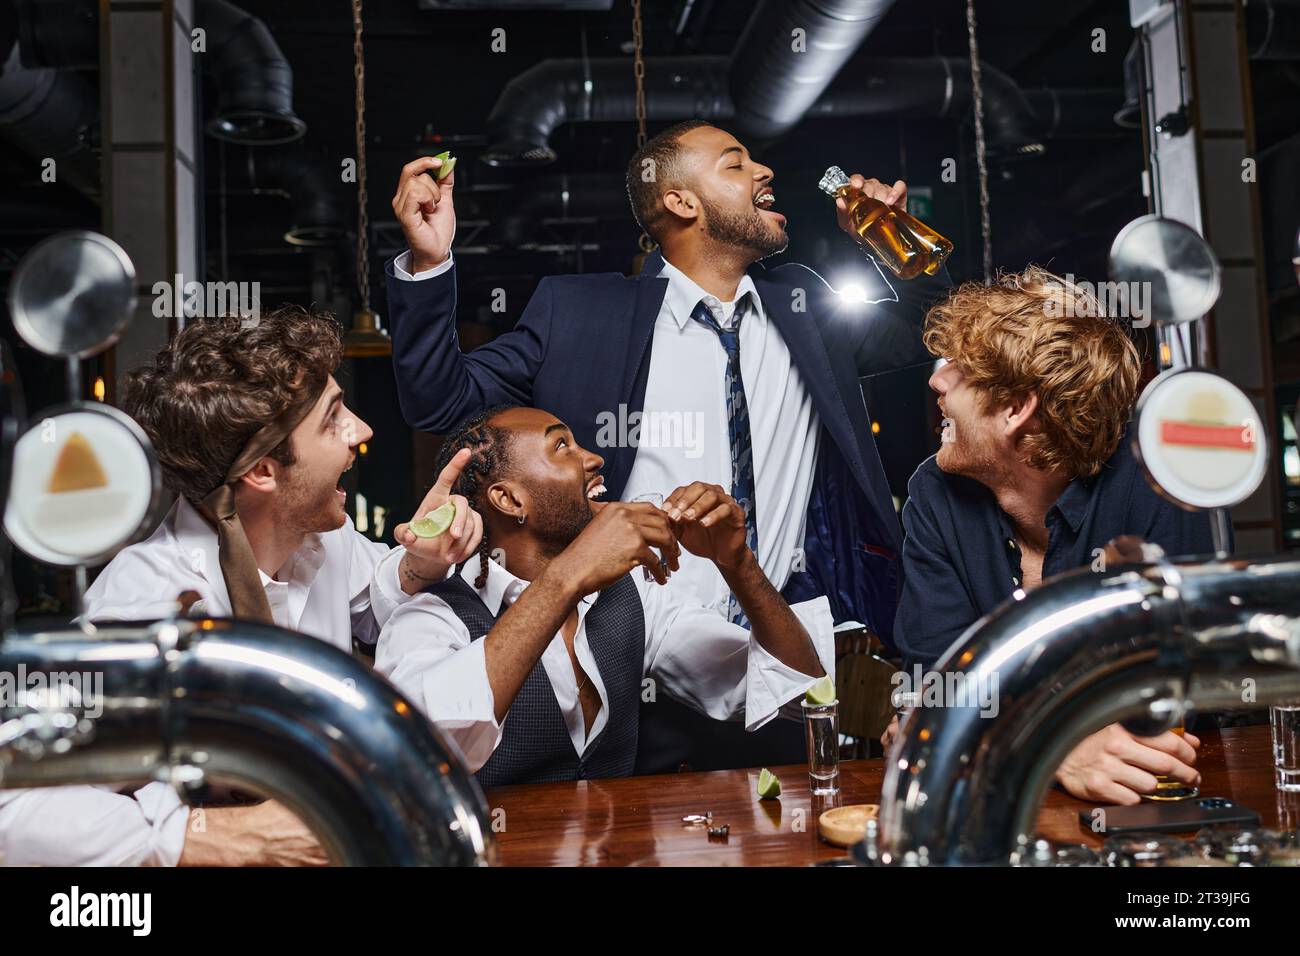 Glückliche Männer, die einen afroamerikanischen Freund sehen, der Bier aus zwei Flaschen trinkt, nachdem er in der Bar gearbeitet hat Stockfoto